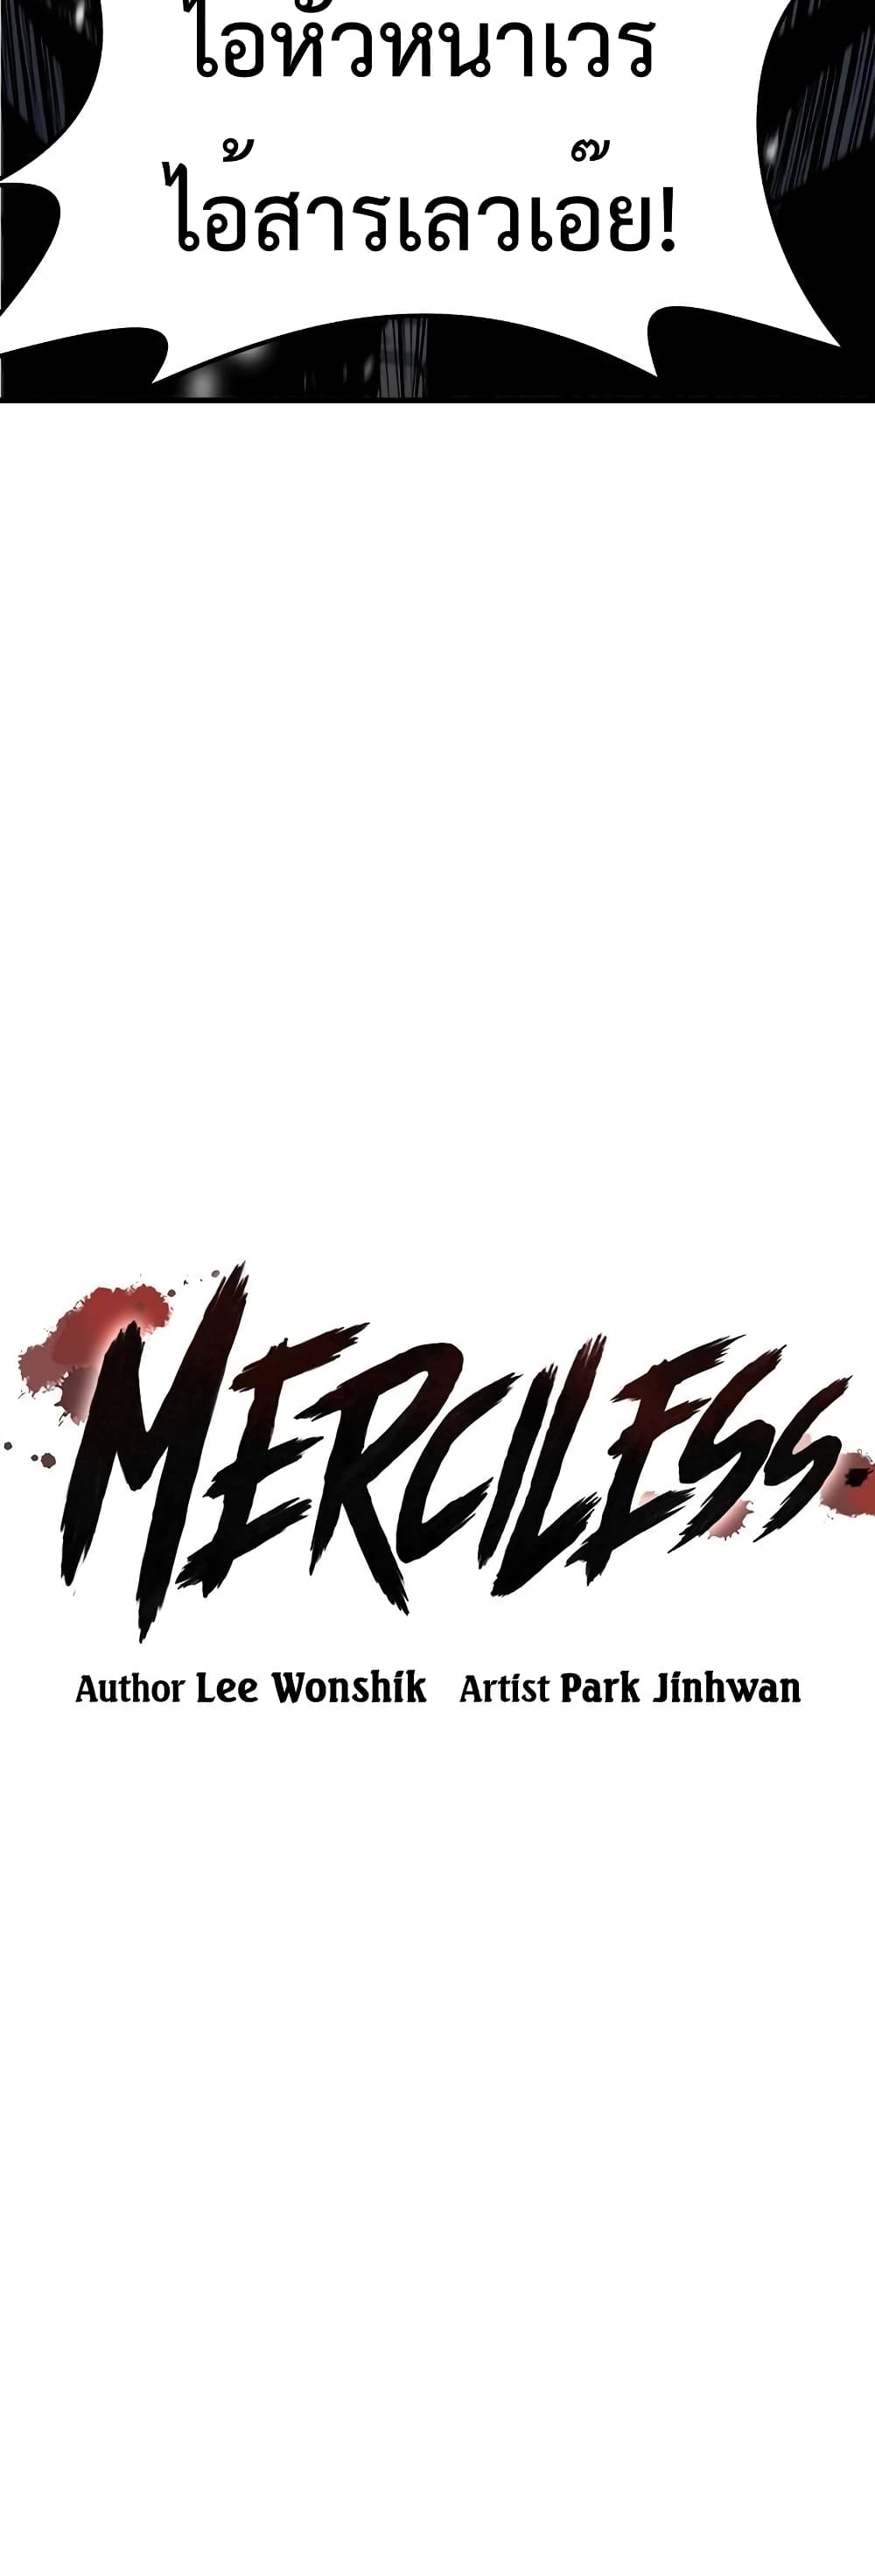 Merciless 7 (2)